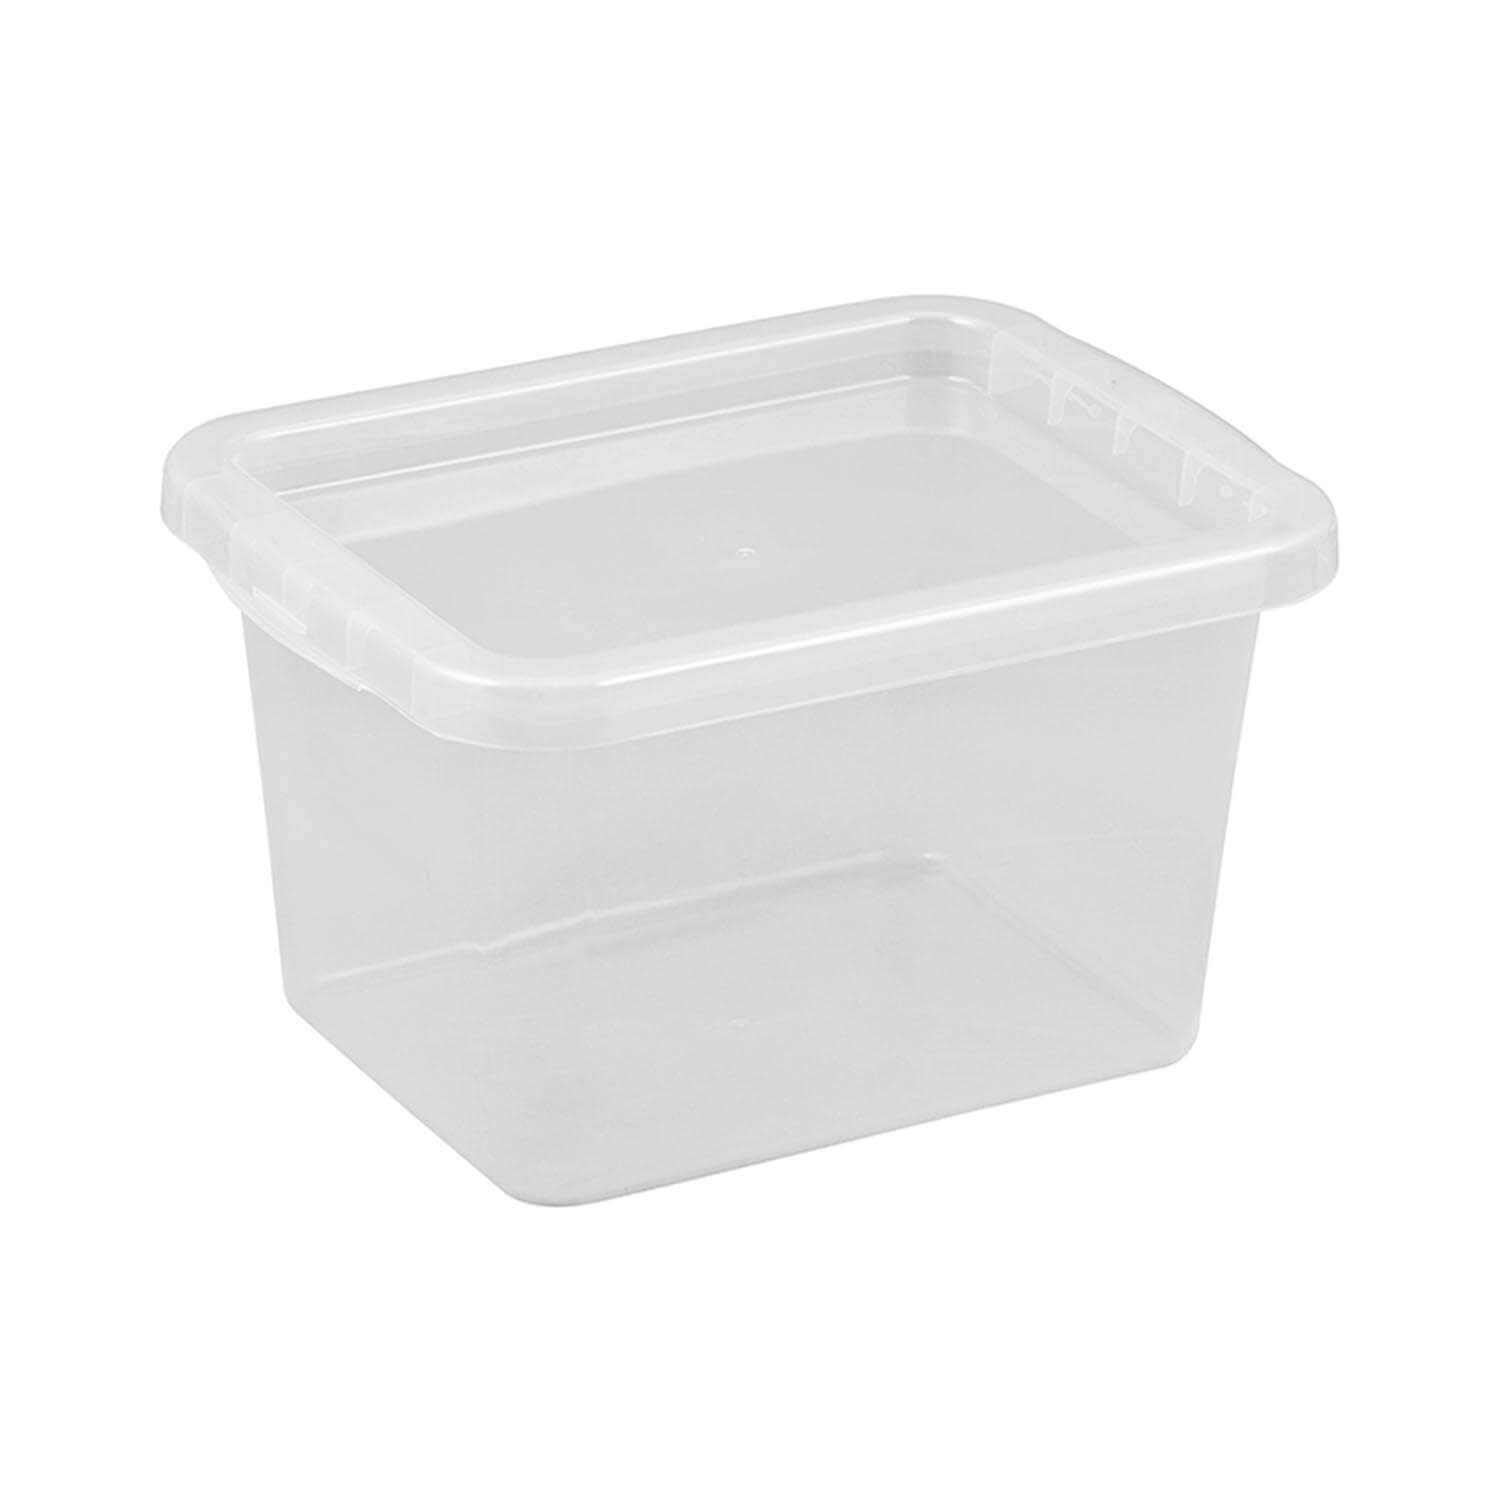 Schrankbox 9 L transparent, Schrank-Organizer, Aufbewahrungsbox, Kunststoffbox